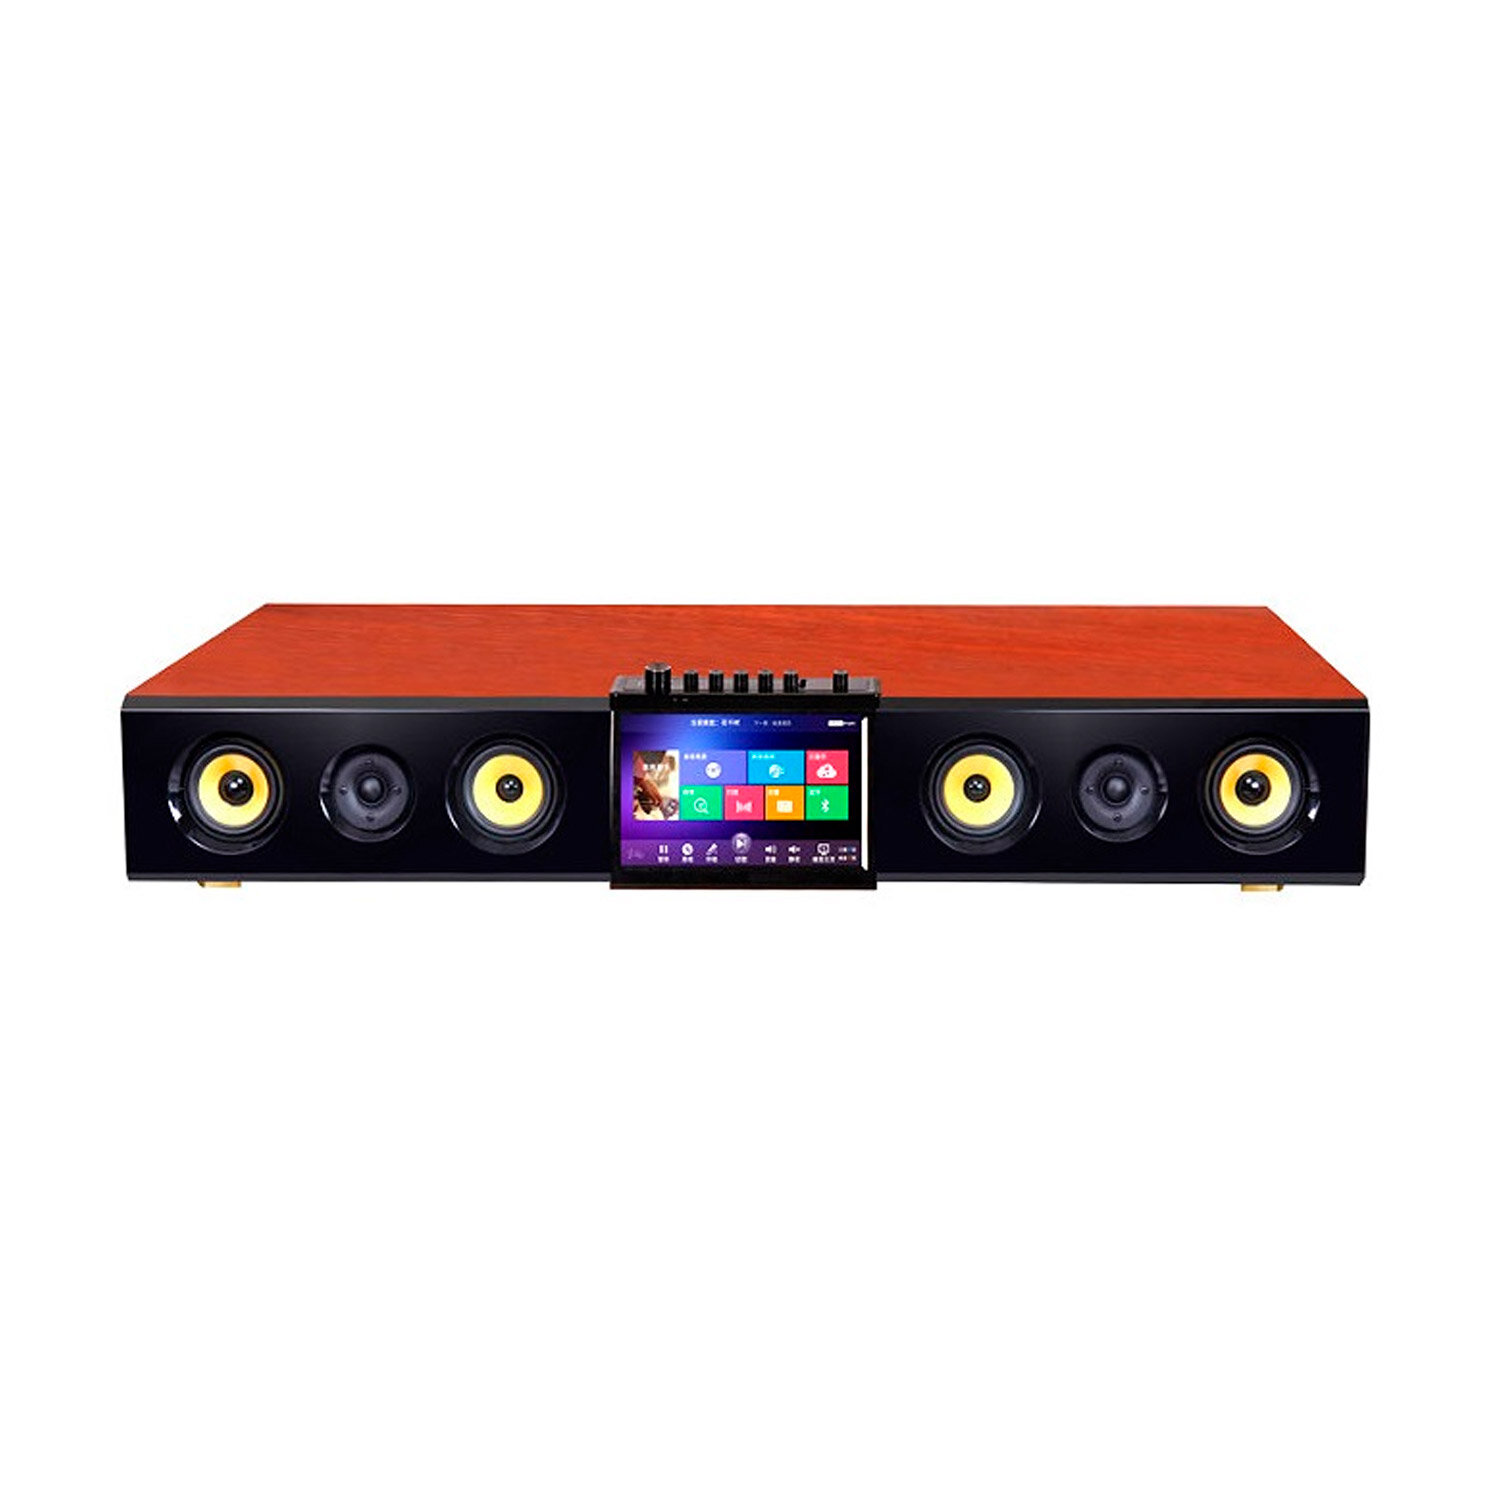 ESTRADA HD Soundbar Караокеарт система с встроенным жестким диском 1Тб профессиональной радиосистемой с двумя микрофонами и активной акустической системой 21